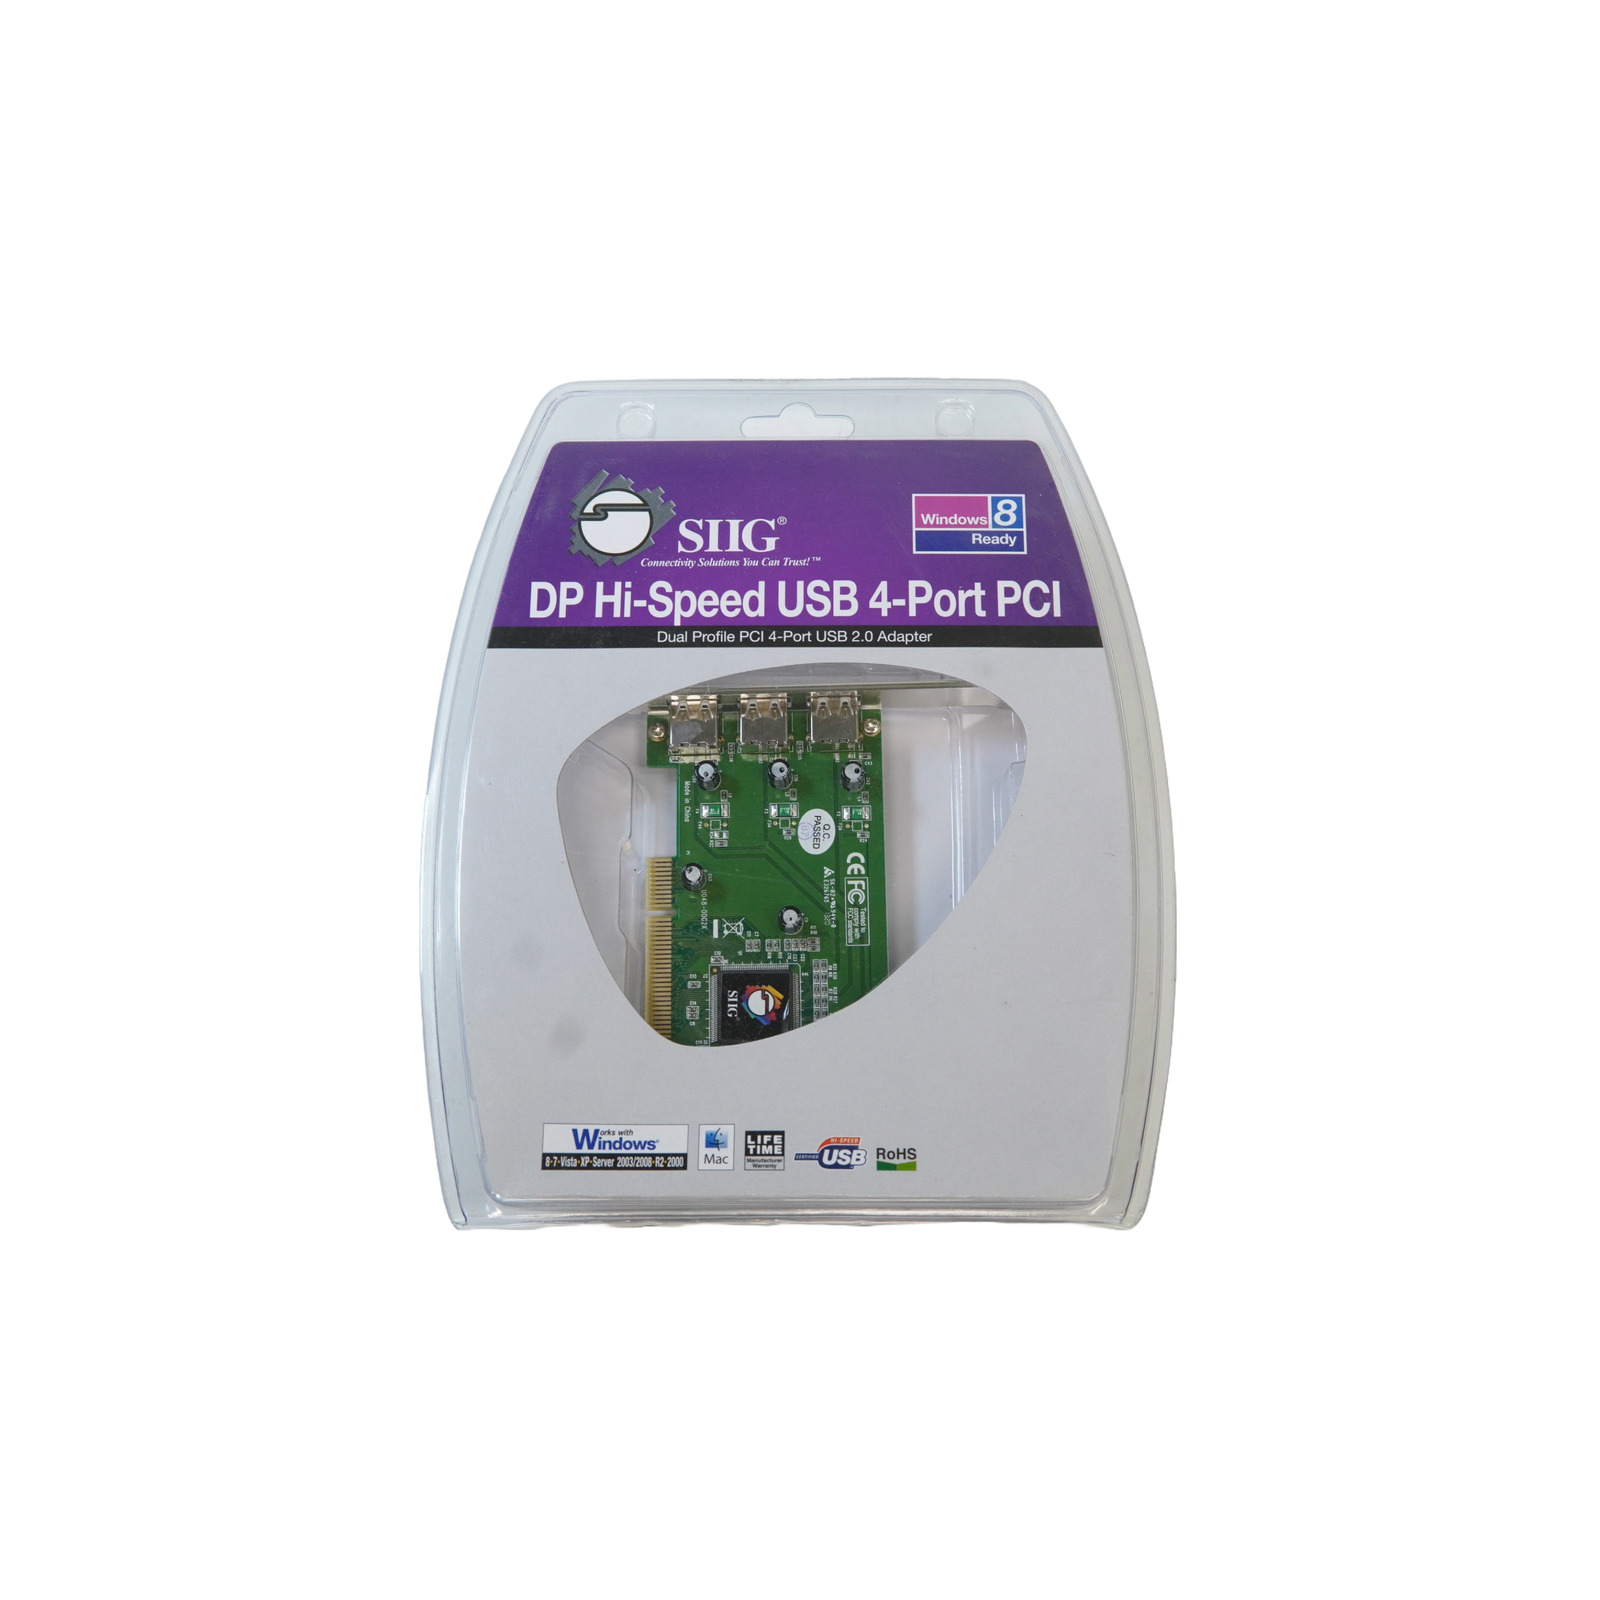 SIIG DP Hi-Speed USB 4-Port PCI